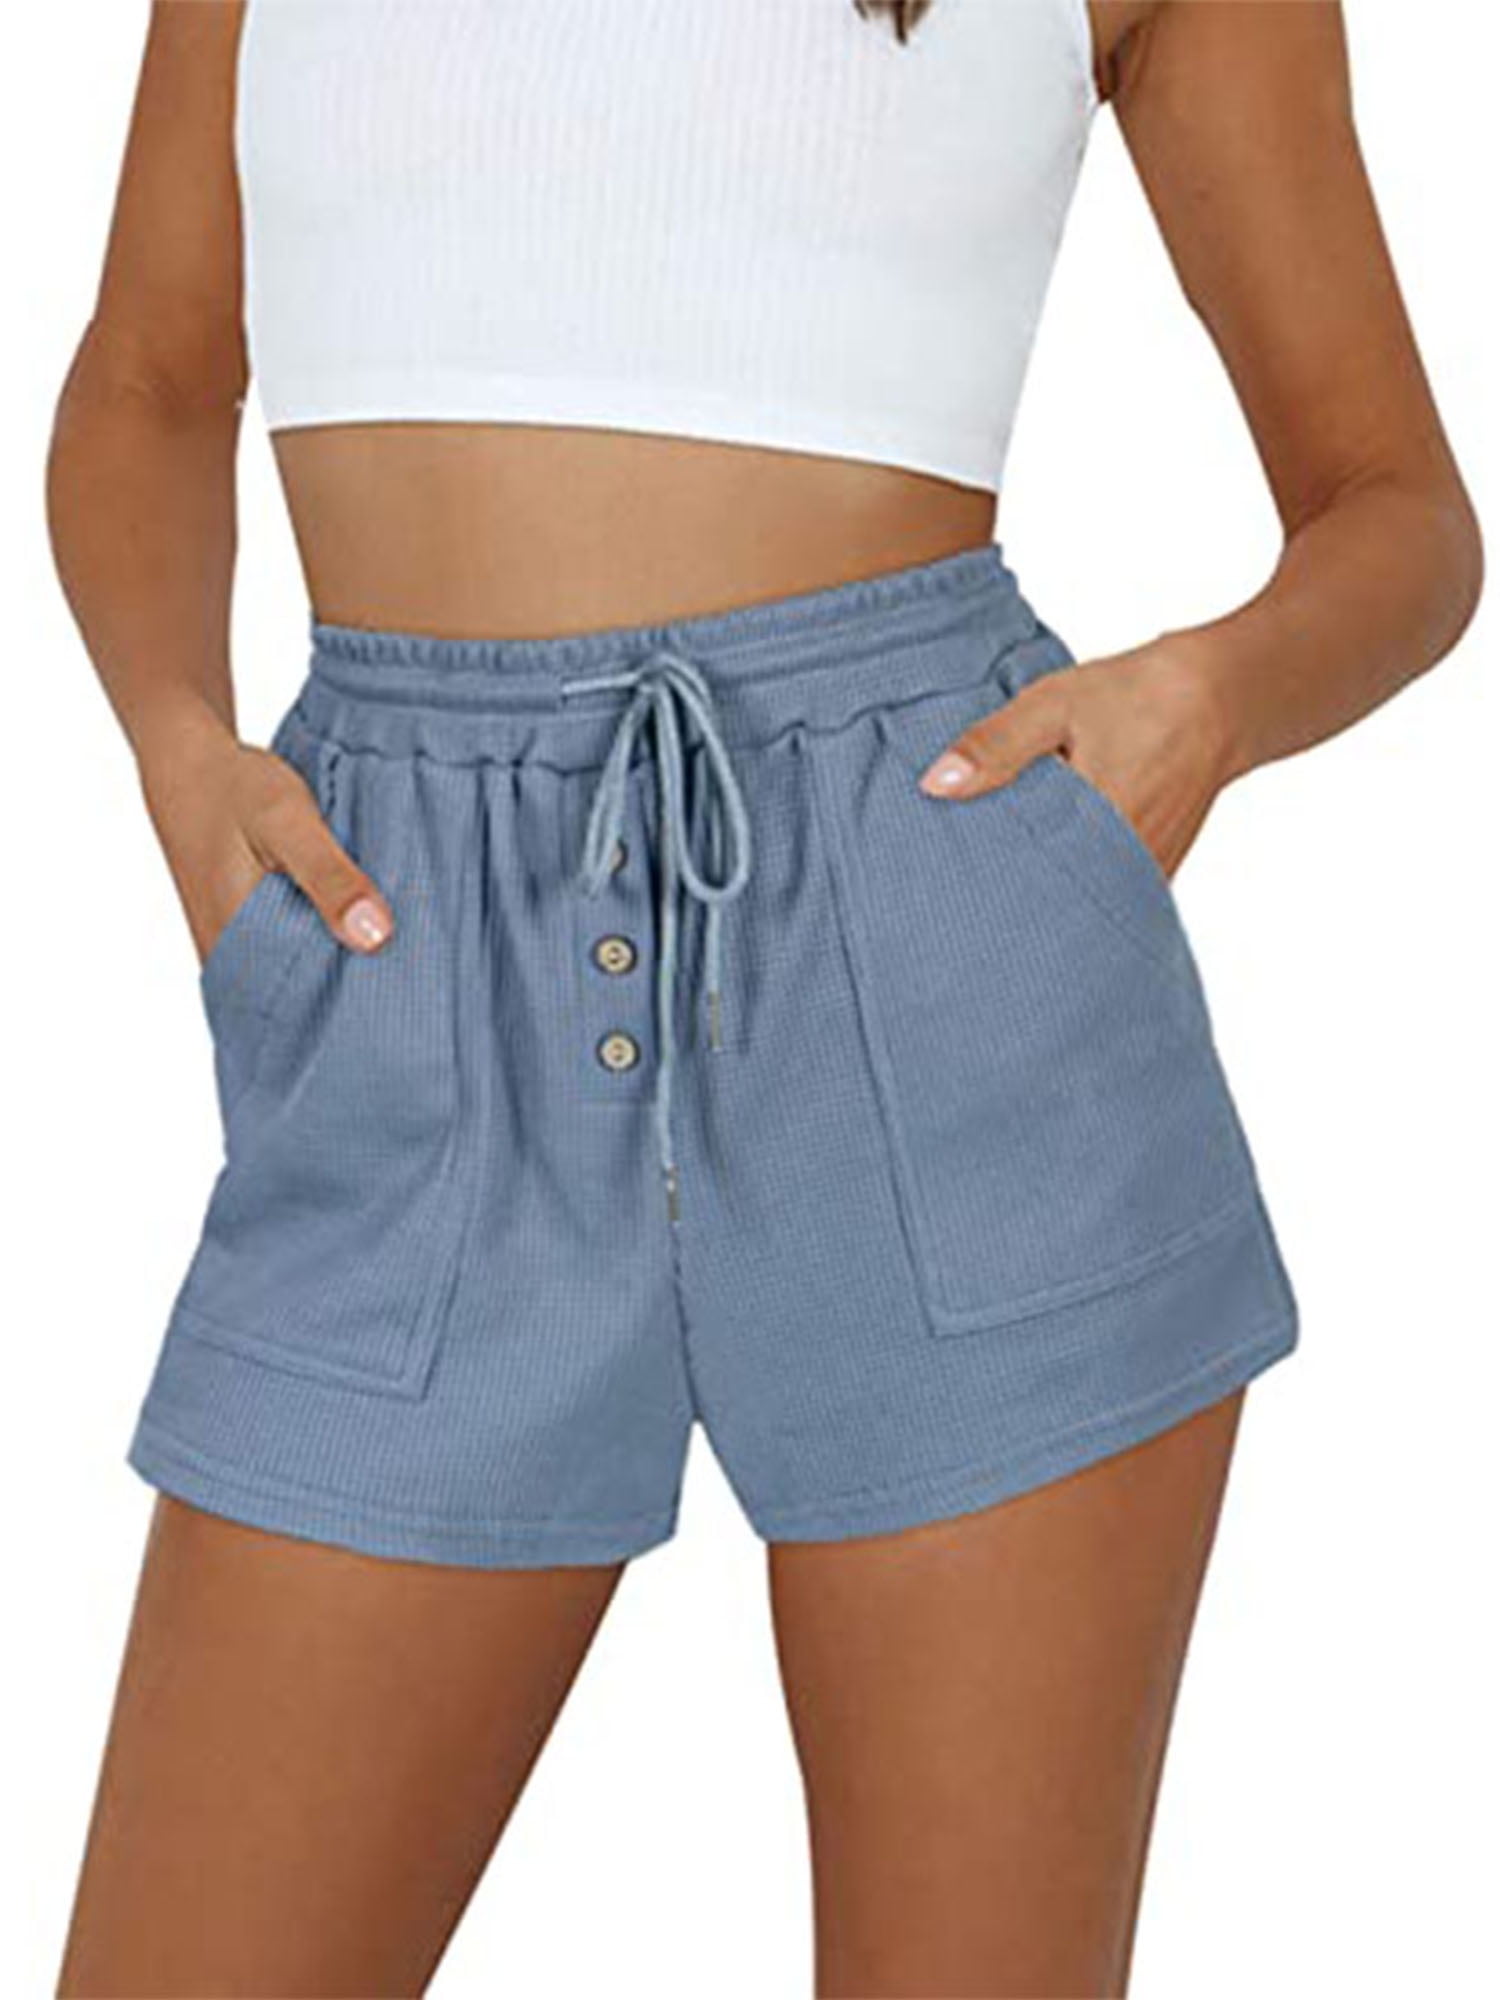 Ontrouw achterstalligheid Herhaald Womens Teen Girls Summer Casual Loose Comfy Drawstring Shorts Lightweight  Elastic Waist Pocketed Short Pants - Walmart.com